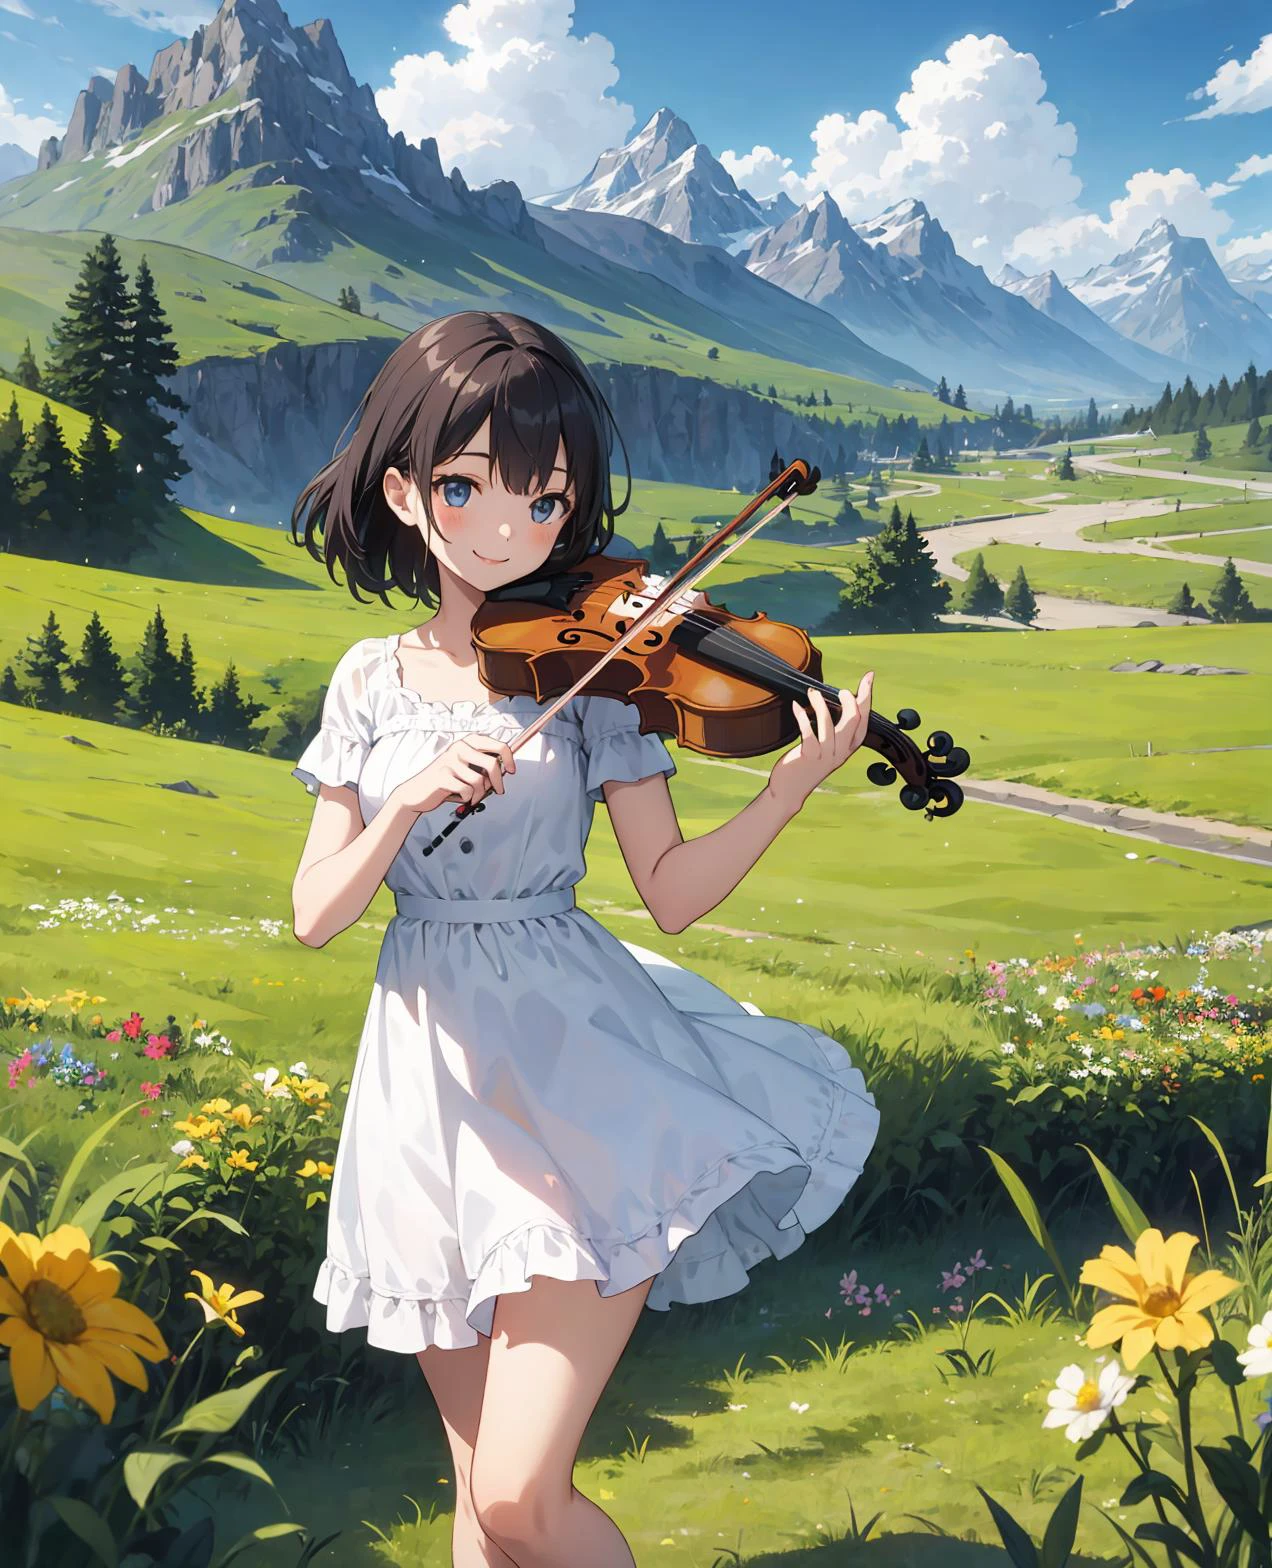 kawaii 1chica, tocando el violín, sonrisa, Delgado, vestido, al aire libre, En naturaleza, montañas,  campo de hierba, flores, cielo, pelo flotante